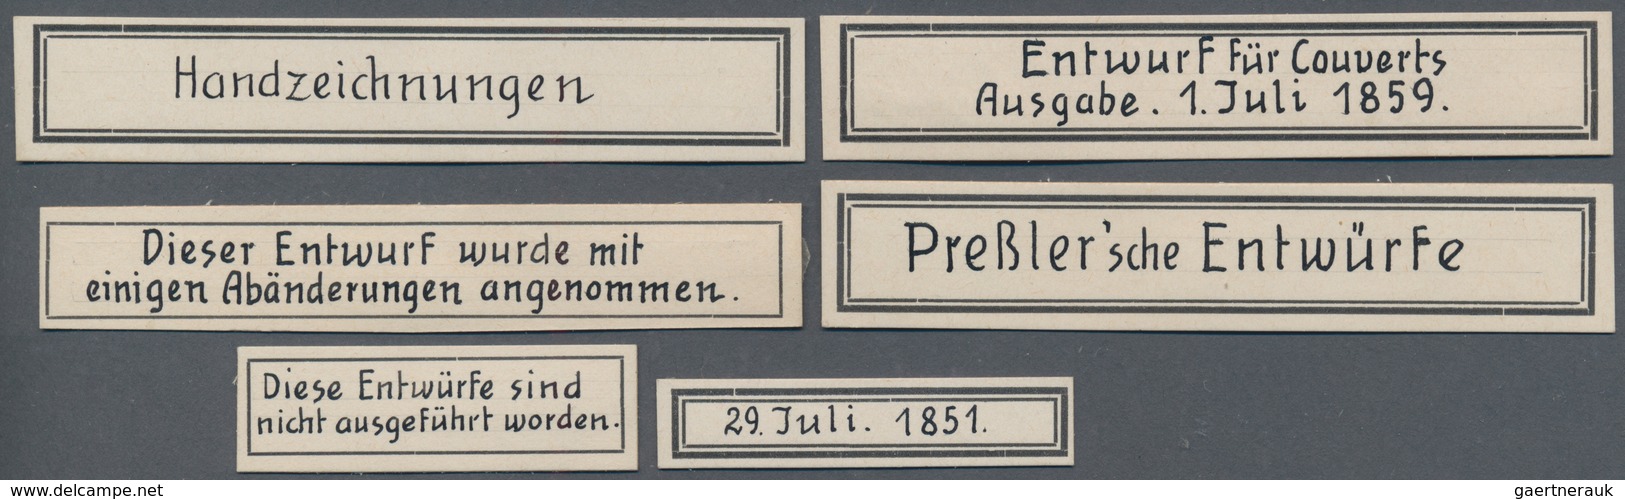 Sachsen - Besonderheiten: 1859, 16 verschiedene Entwürfe von Briefmarken und GA-Wertstempeln der ver